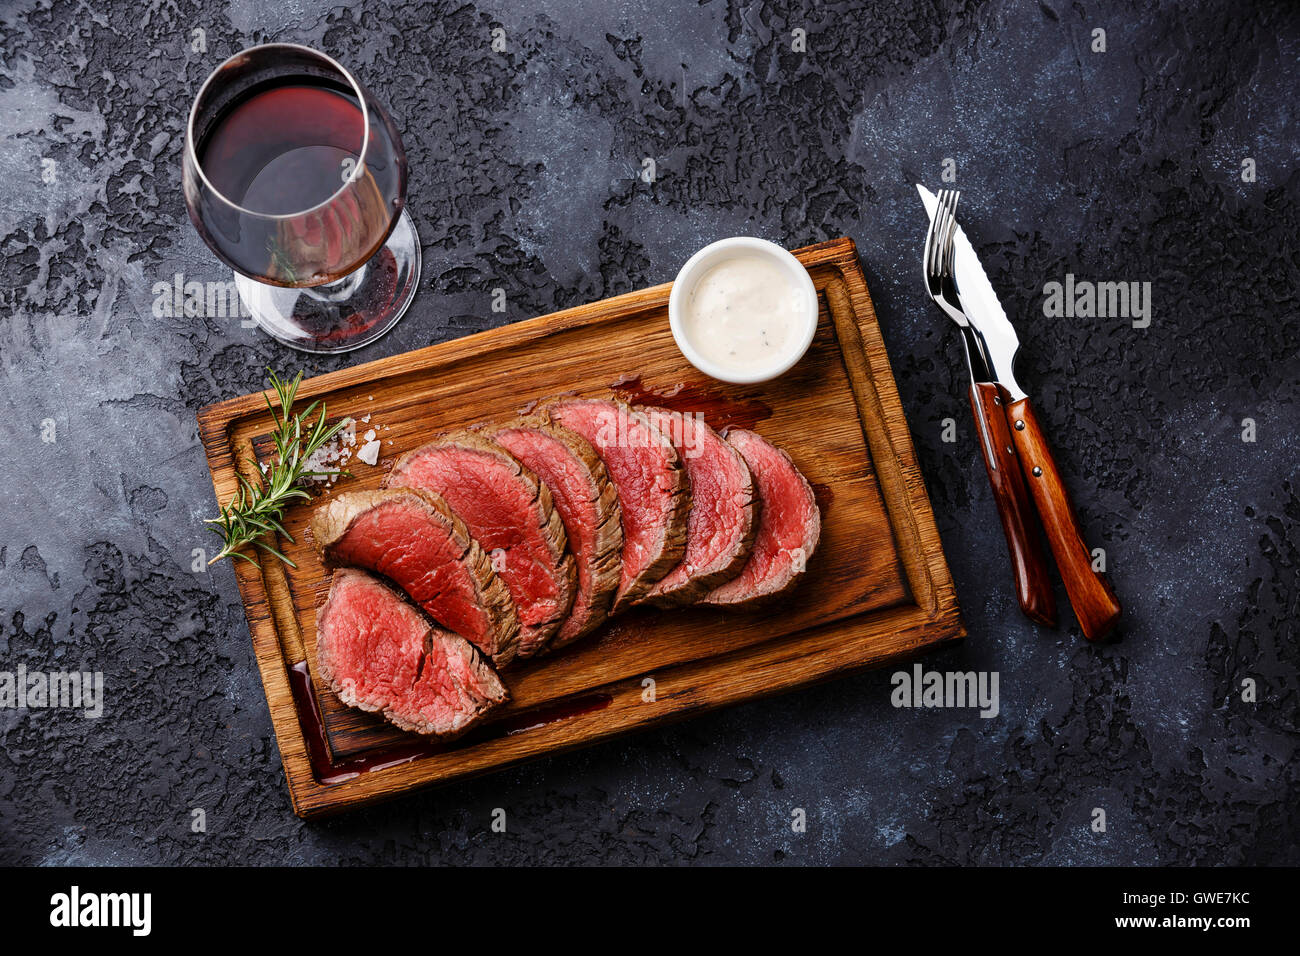 Tranches de filet mignon grillé Steak roastbeef et sauce au piment sur planche à découper en bois et le vin rouge sur fond sombre Banque D'Images